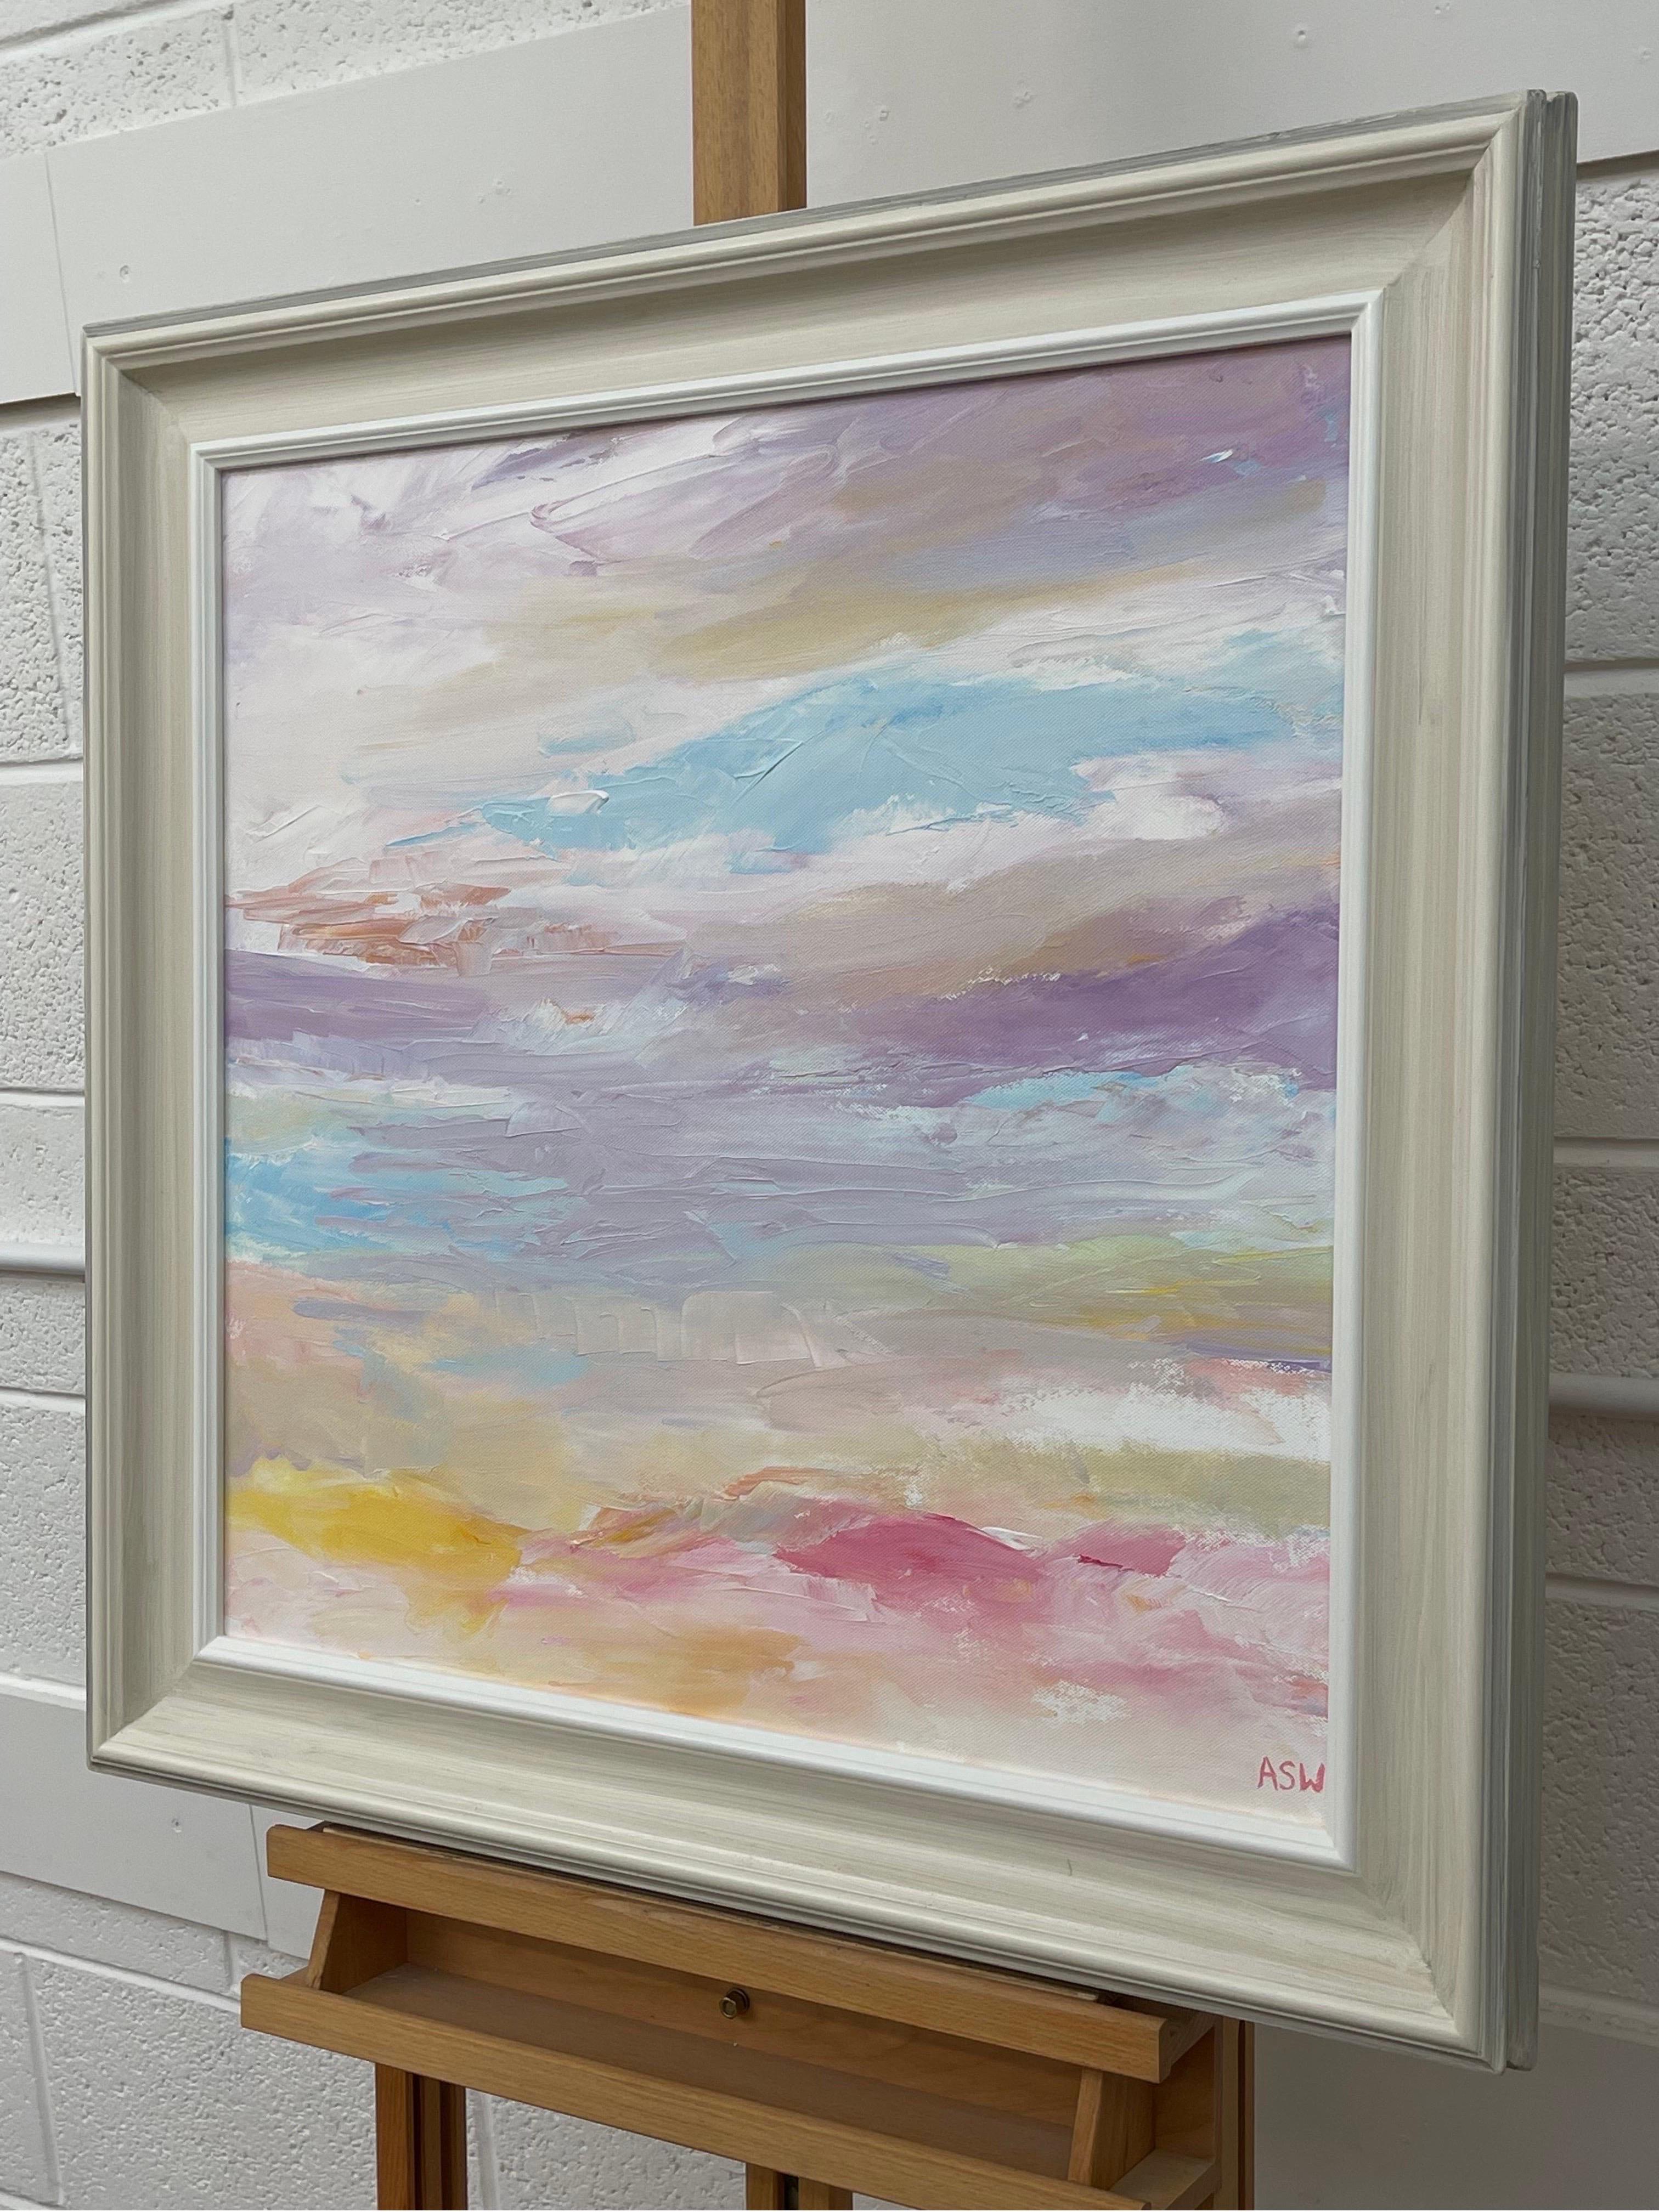 Abstrakt-impressionistische Seelandschaft der zeitgenössischen britischen Künstlerin Angela Wakefield. Dieses stimmungsvolle Gemälde mit dem Titel 